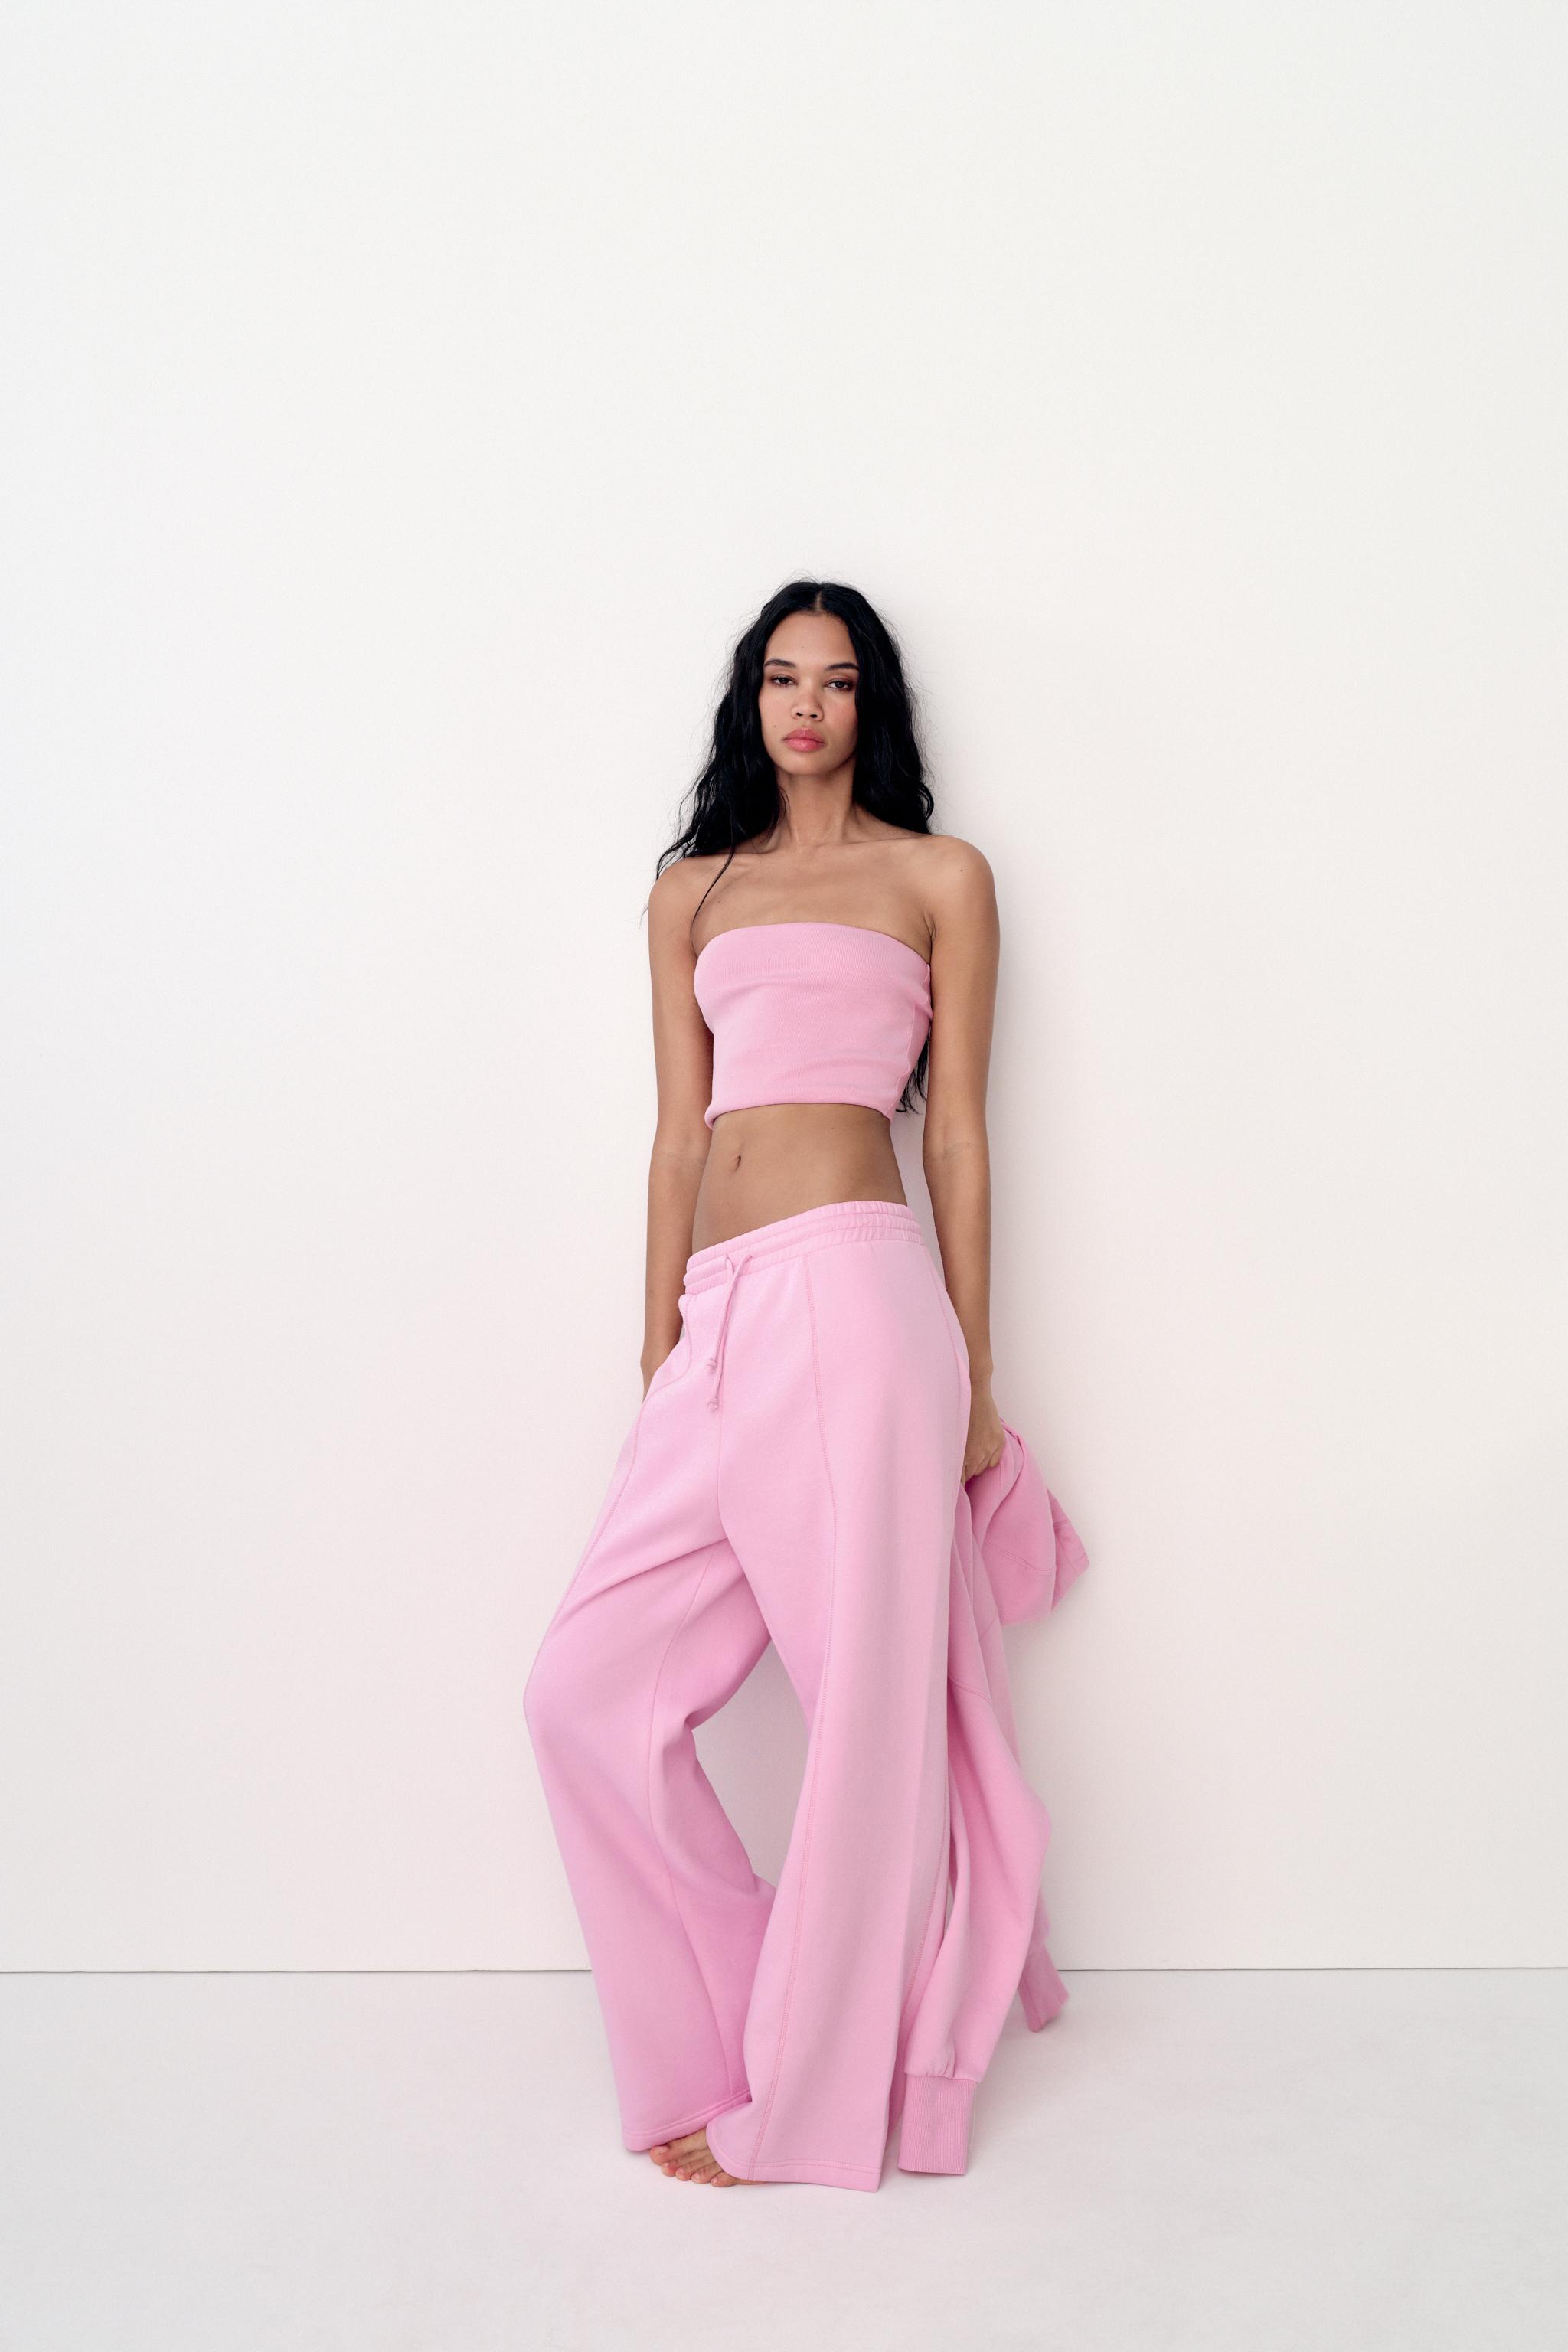 Zara, Tops, New Zara Pink Texture Corset Top